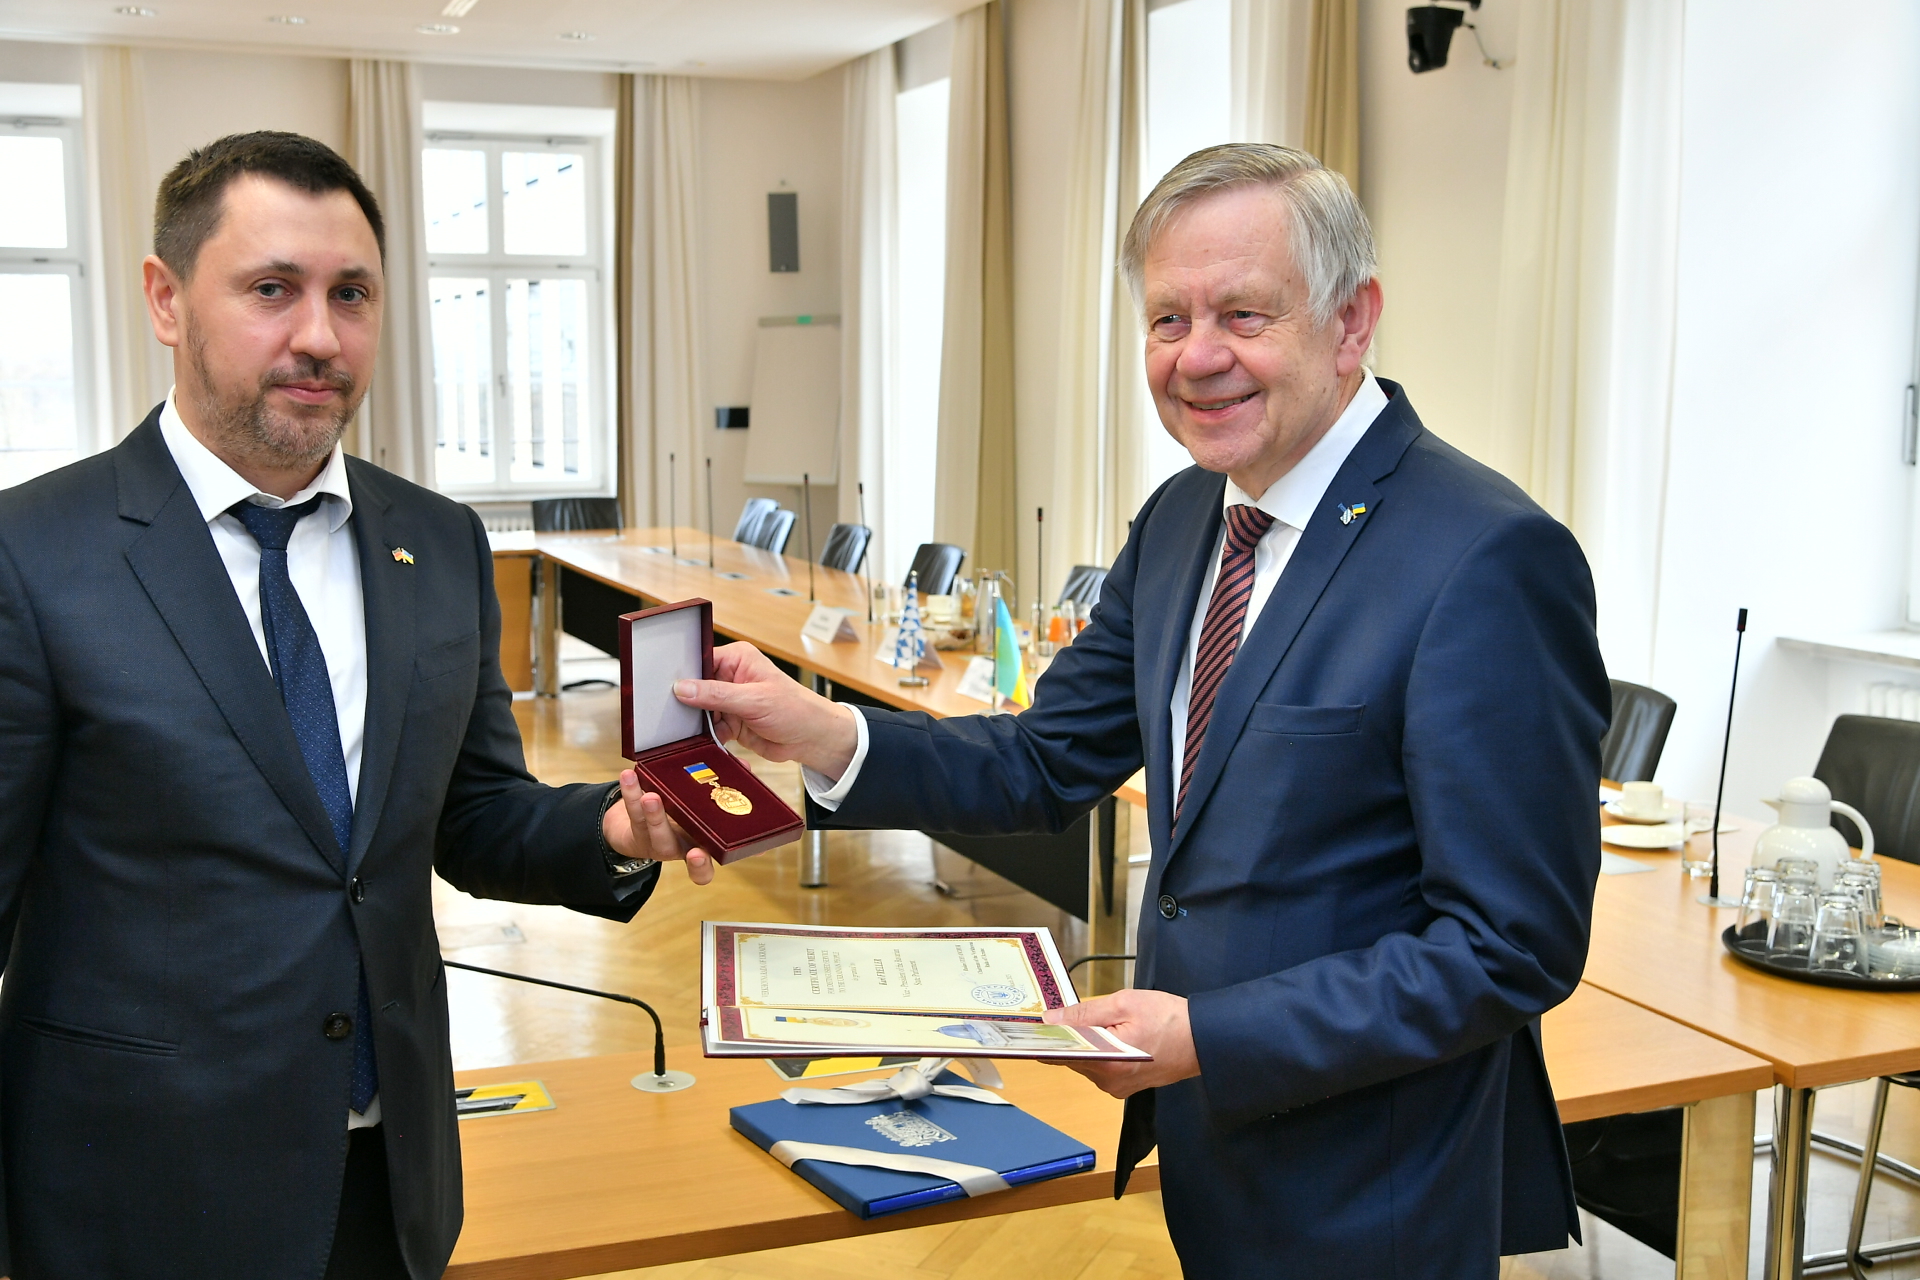 Vizepräsident des Bayerischen Landtags überreicht Orden an ukrainischen Abgeordneten